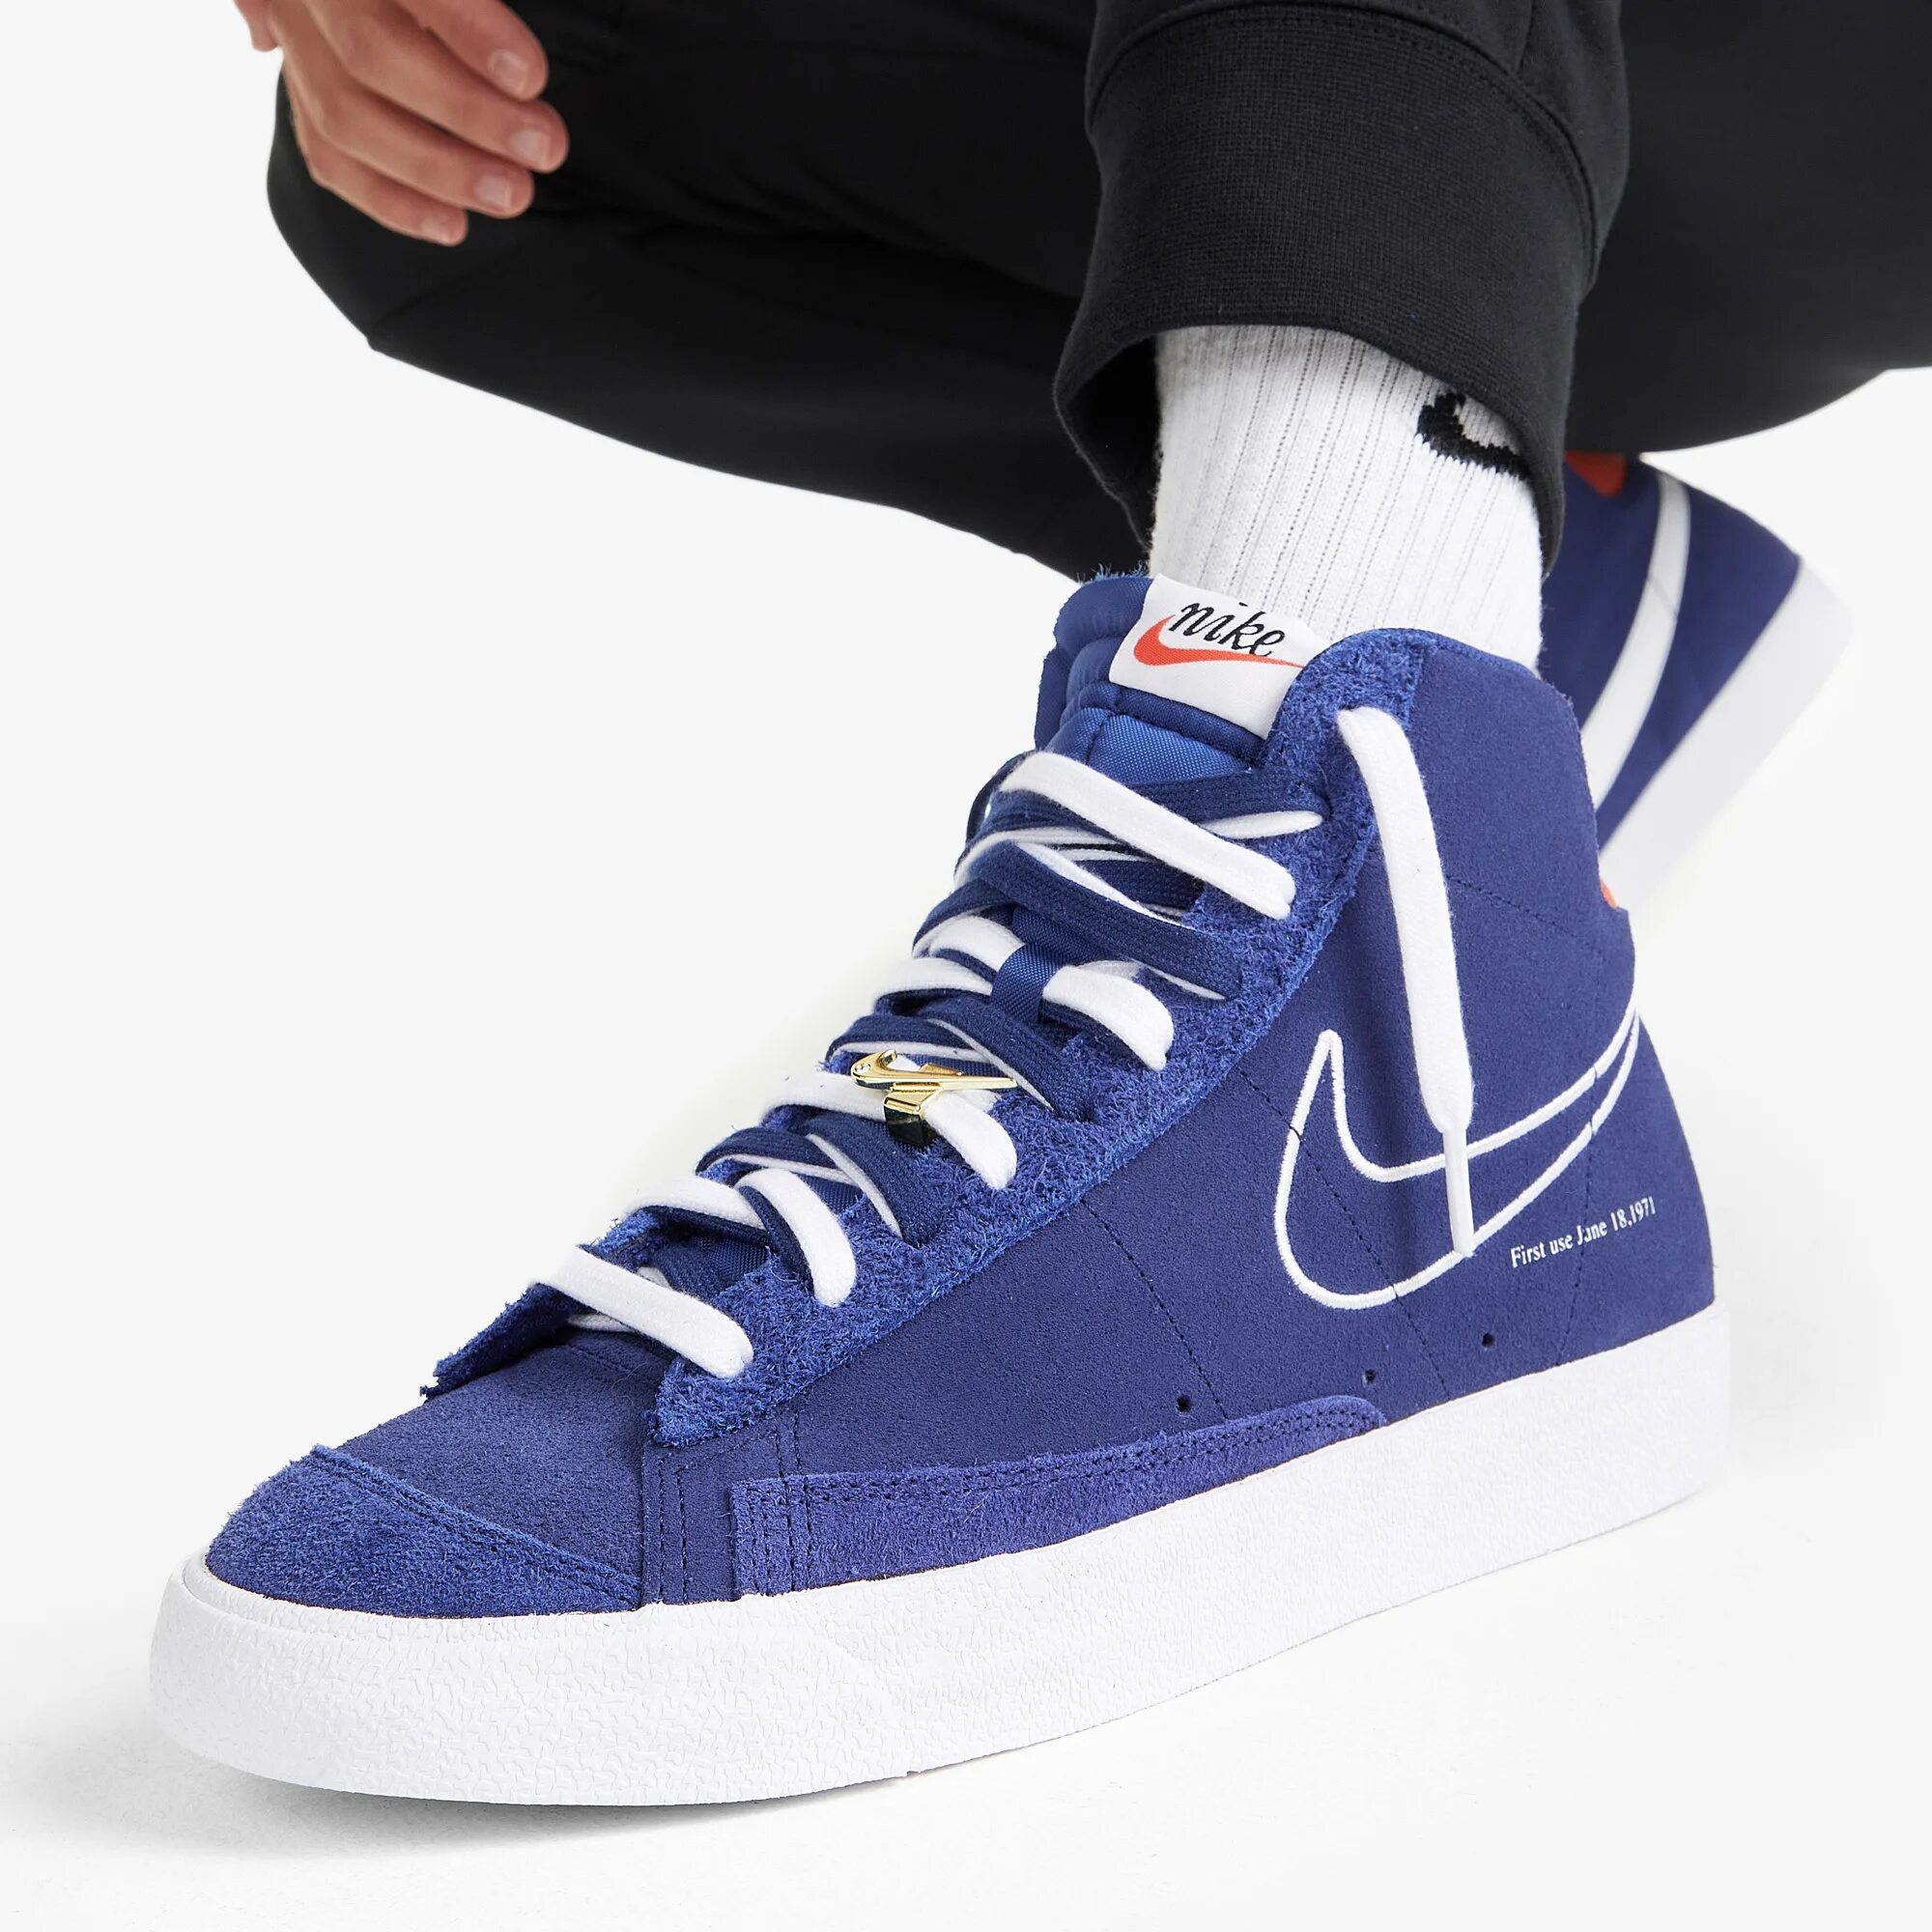 Кеды найк блейзер МИД 77. Кеды Nike Nike Blazer Mid '77 dc3433n06-400, цвет синий, размер 40. Найк блейзер МИД 77 голубые. Nike Blazer Mid 77 Classic.